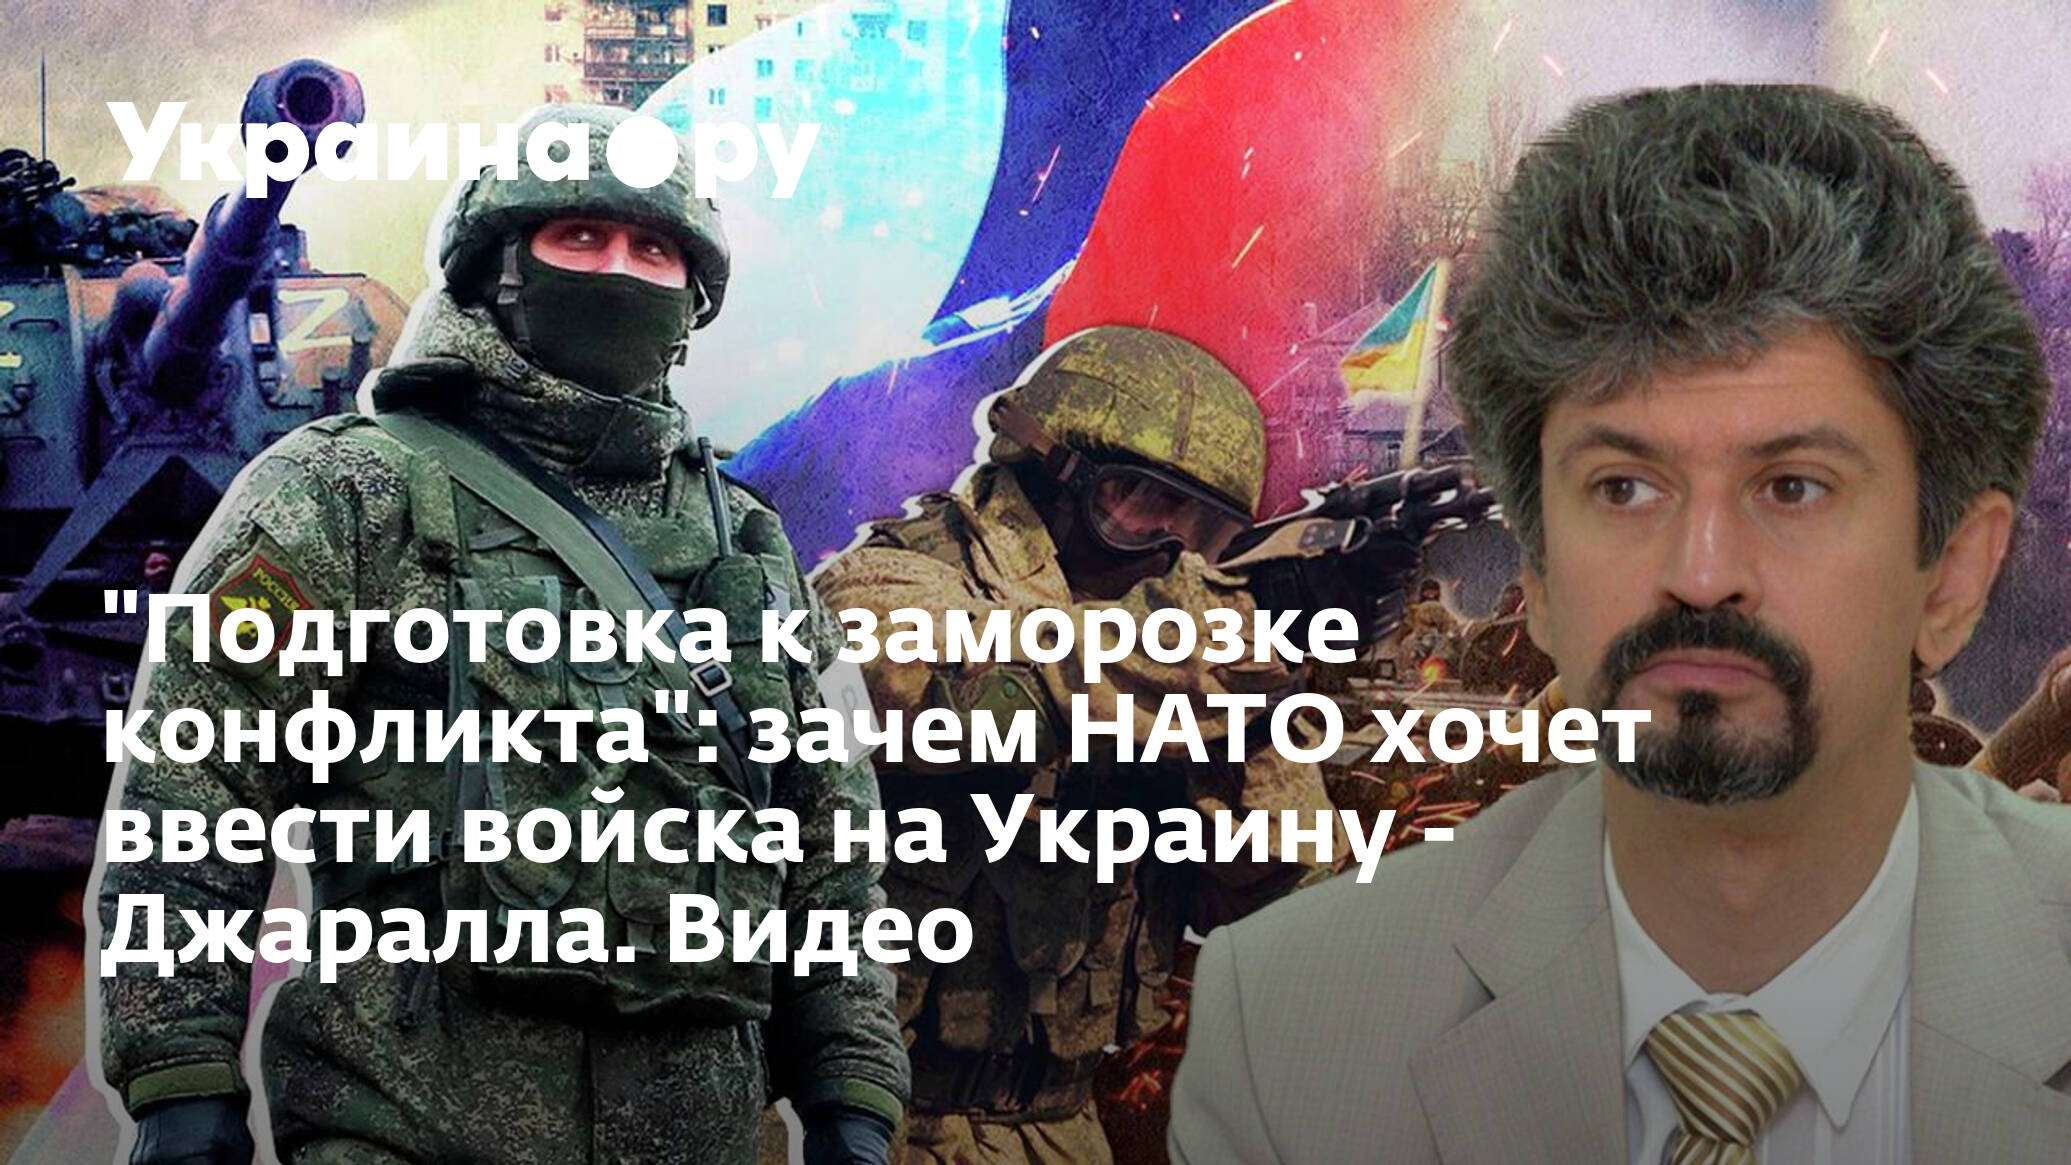 НАТО хочет ввести войска на Украину. Сво России на Украине. Нато может ввести войска на украину